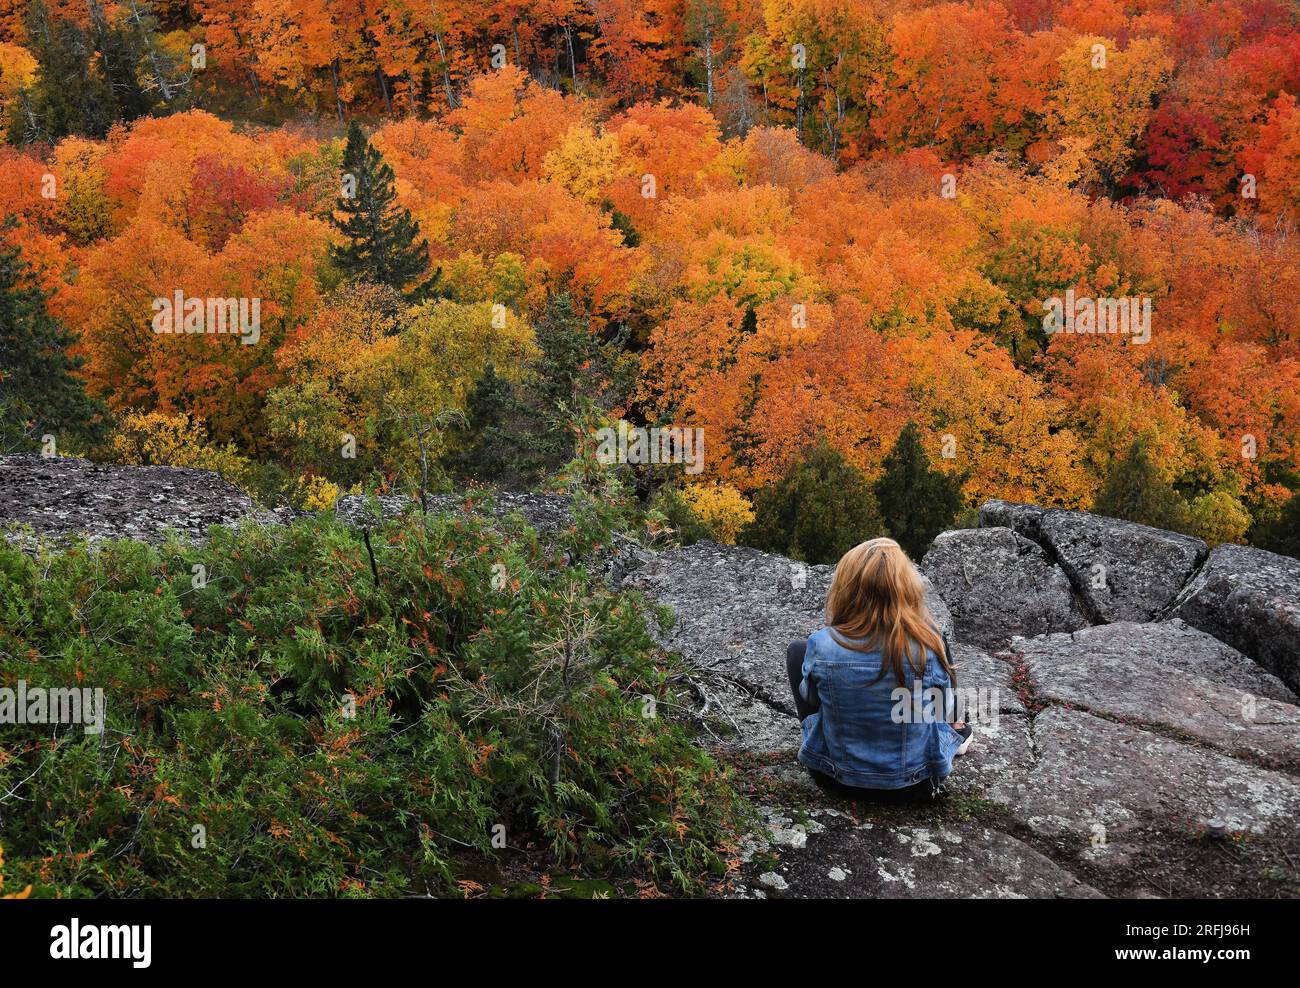 Eine junge Frau sitzt auf einem Felsen und blickt im Herbst auf die bunten Bäume. Stockfoto